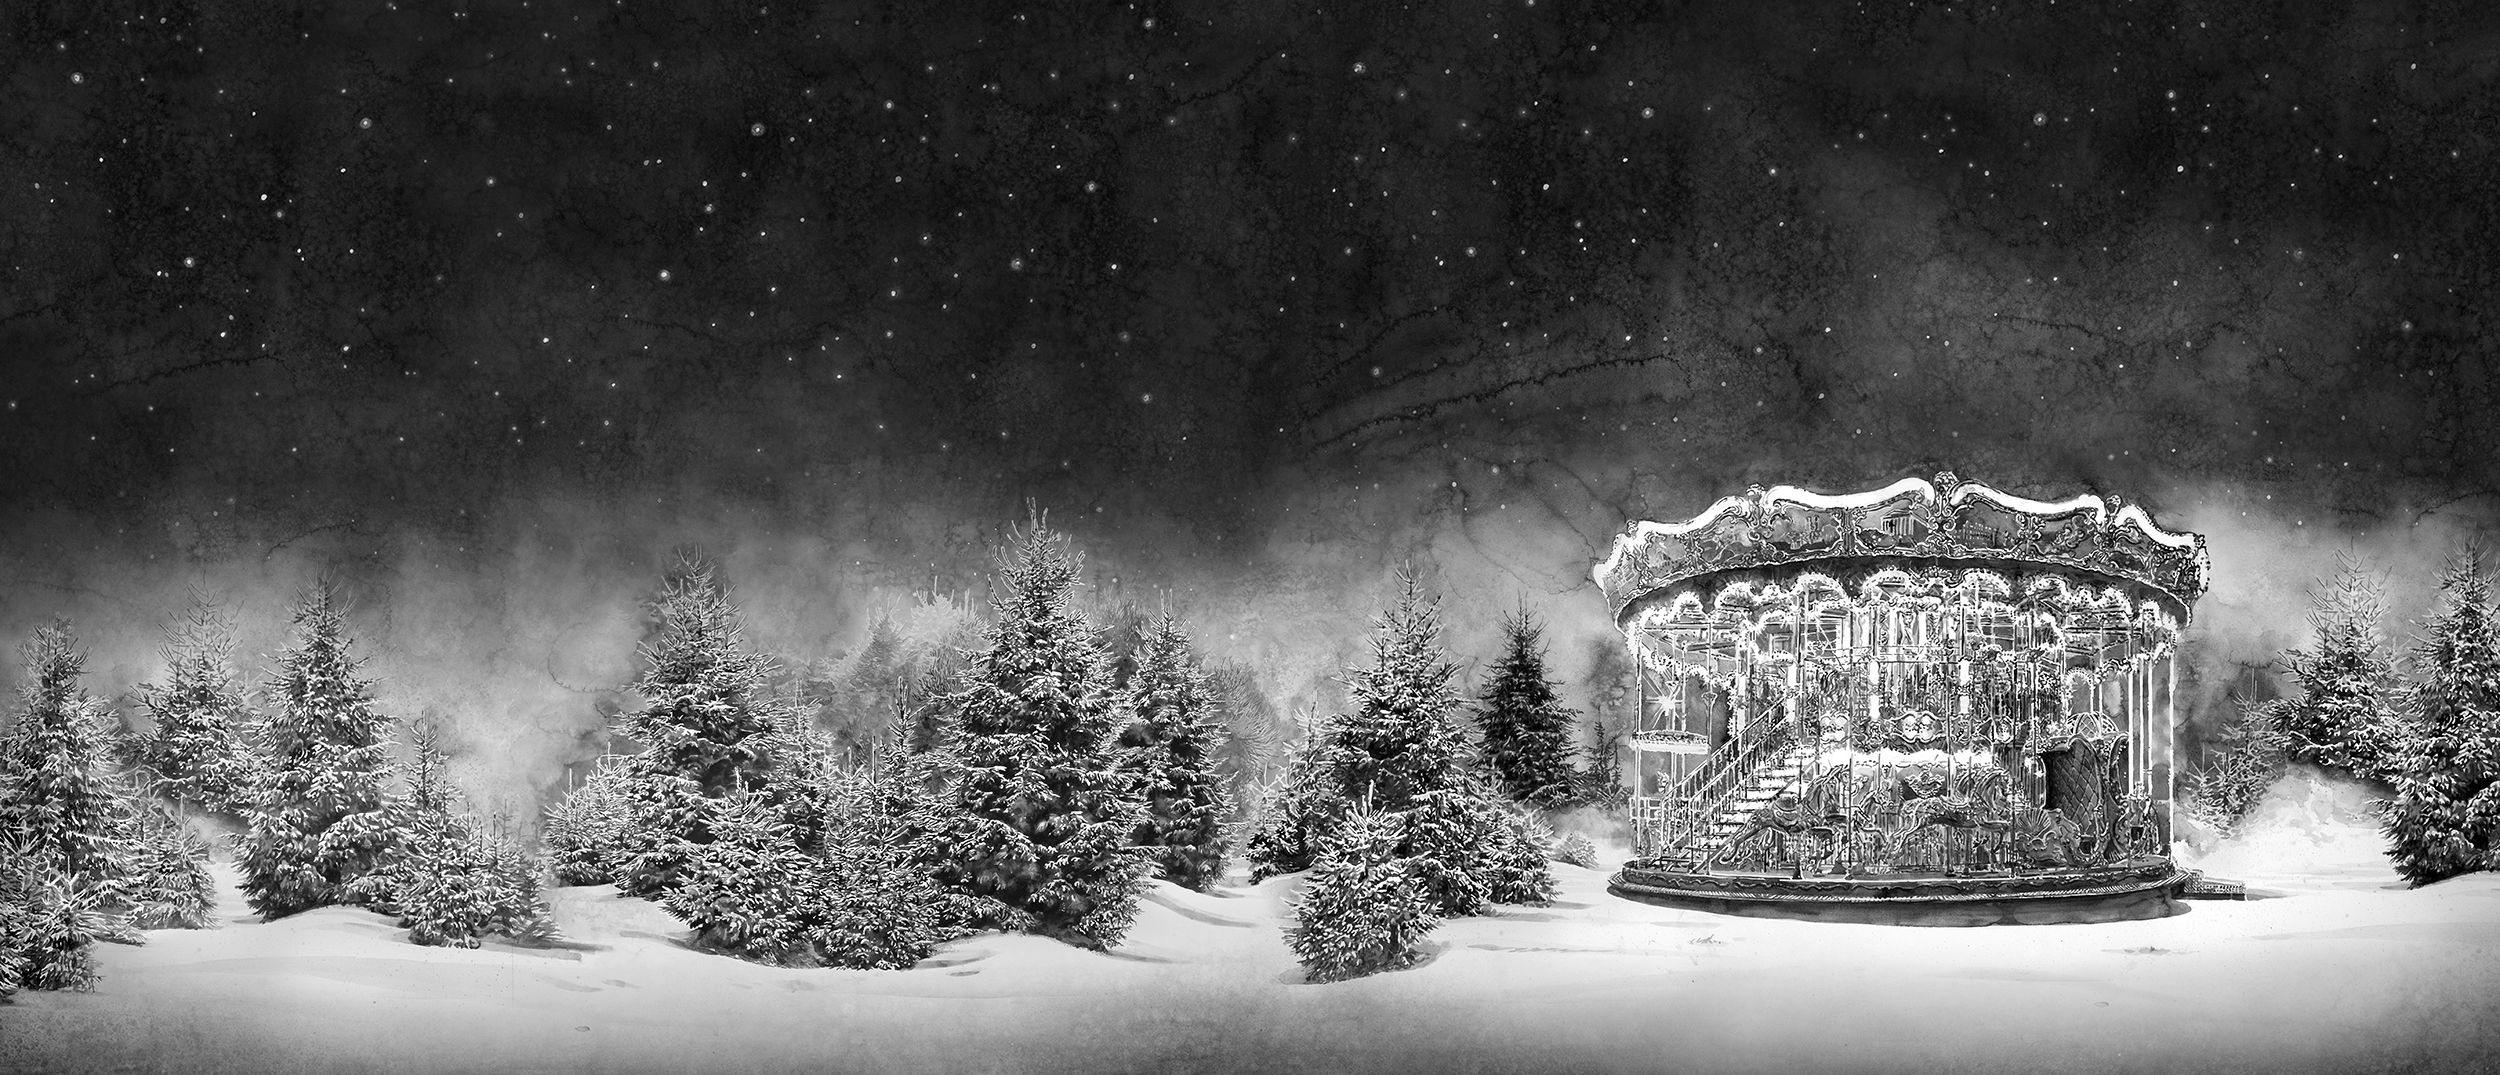 Svartvit akvarell av en karusell i skog i snölandskap